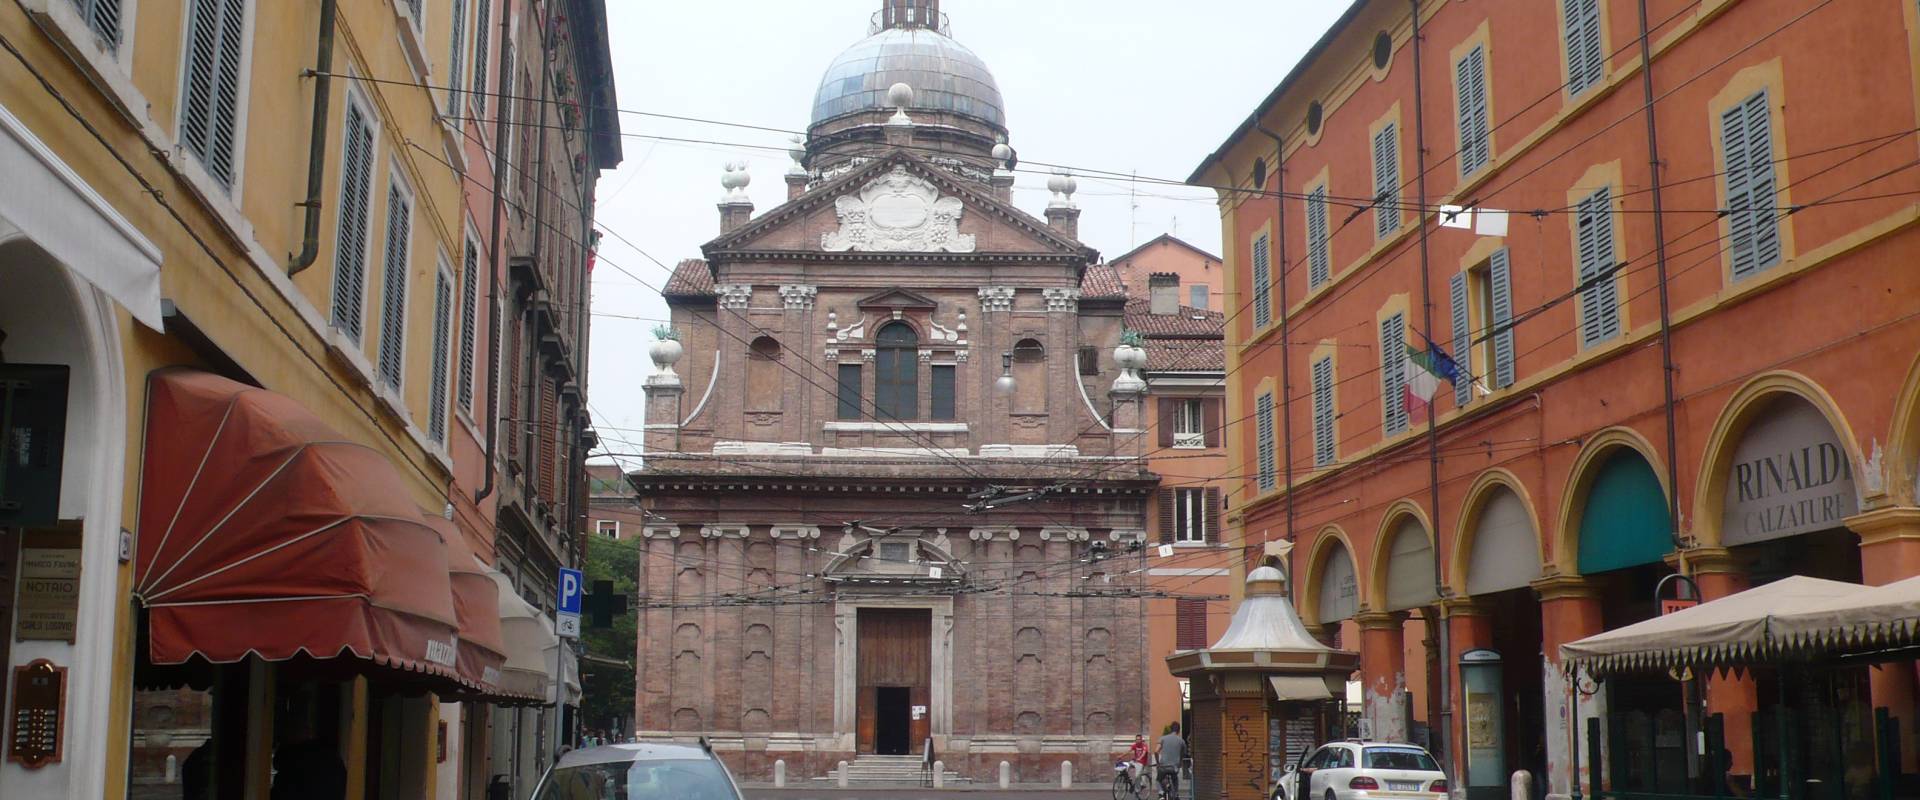 Chiesa del Voto Modena - foto di RatMan1234